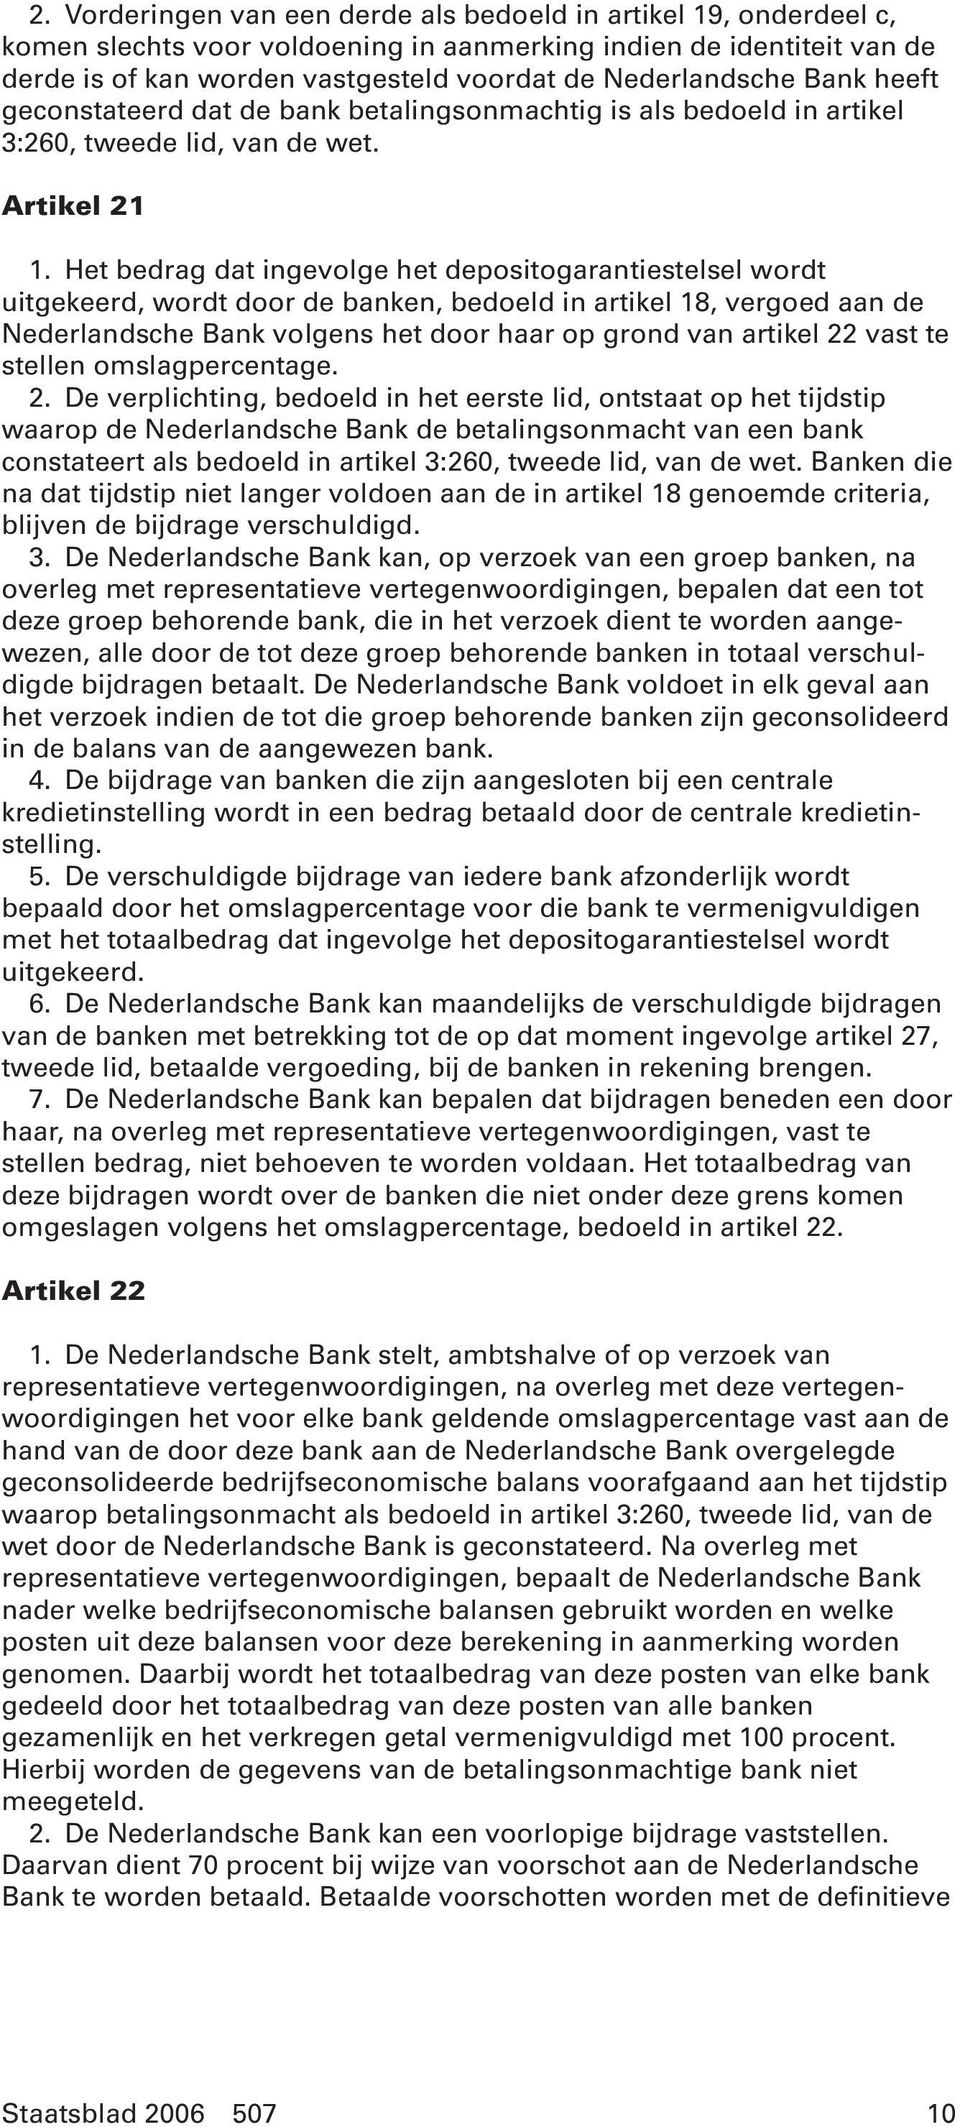 Het bedrag dat ingevolge het depositogarantiestelsel wordt uitgekeerd, wordt door de banken, bedoeld in artikel 18, vergoed aan de Nederlandsche Bank volgens het door haar op grond van artikel 22